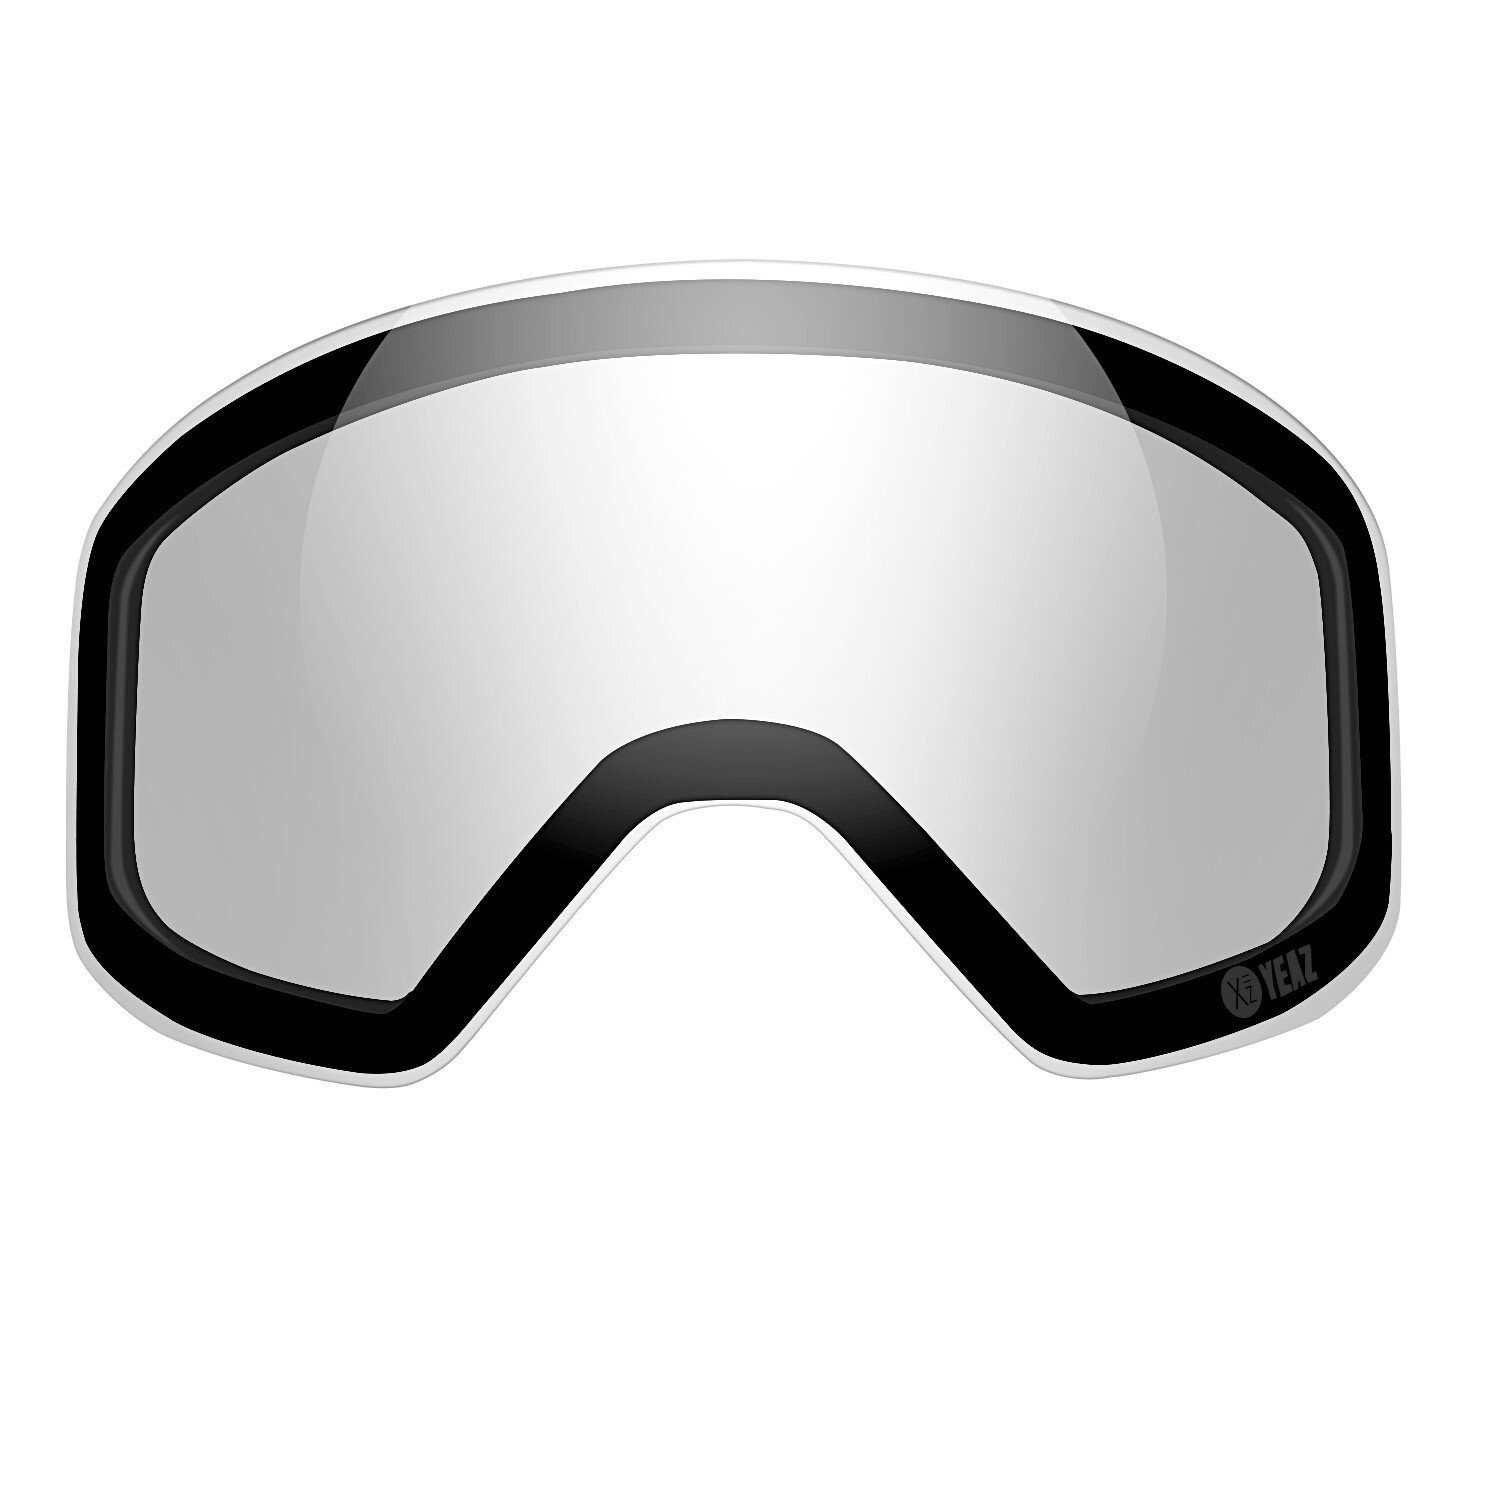 YEAZ Skibrille APEX magnetisches wechselglas photochrome, Photochrome Ersatzglas für APEX Skibrille